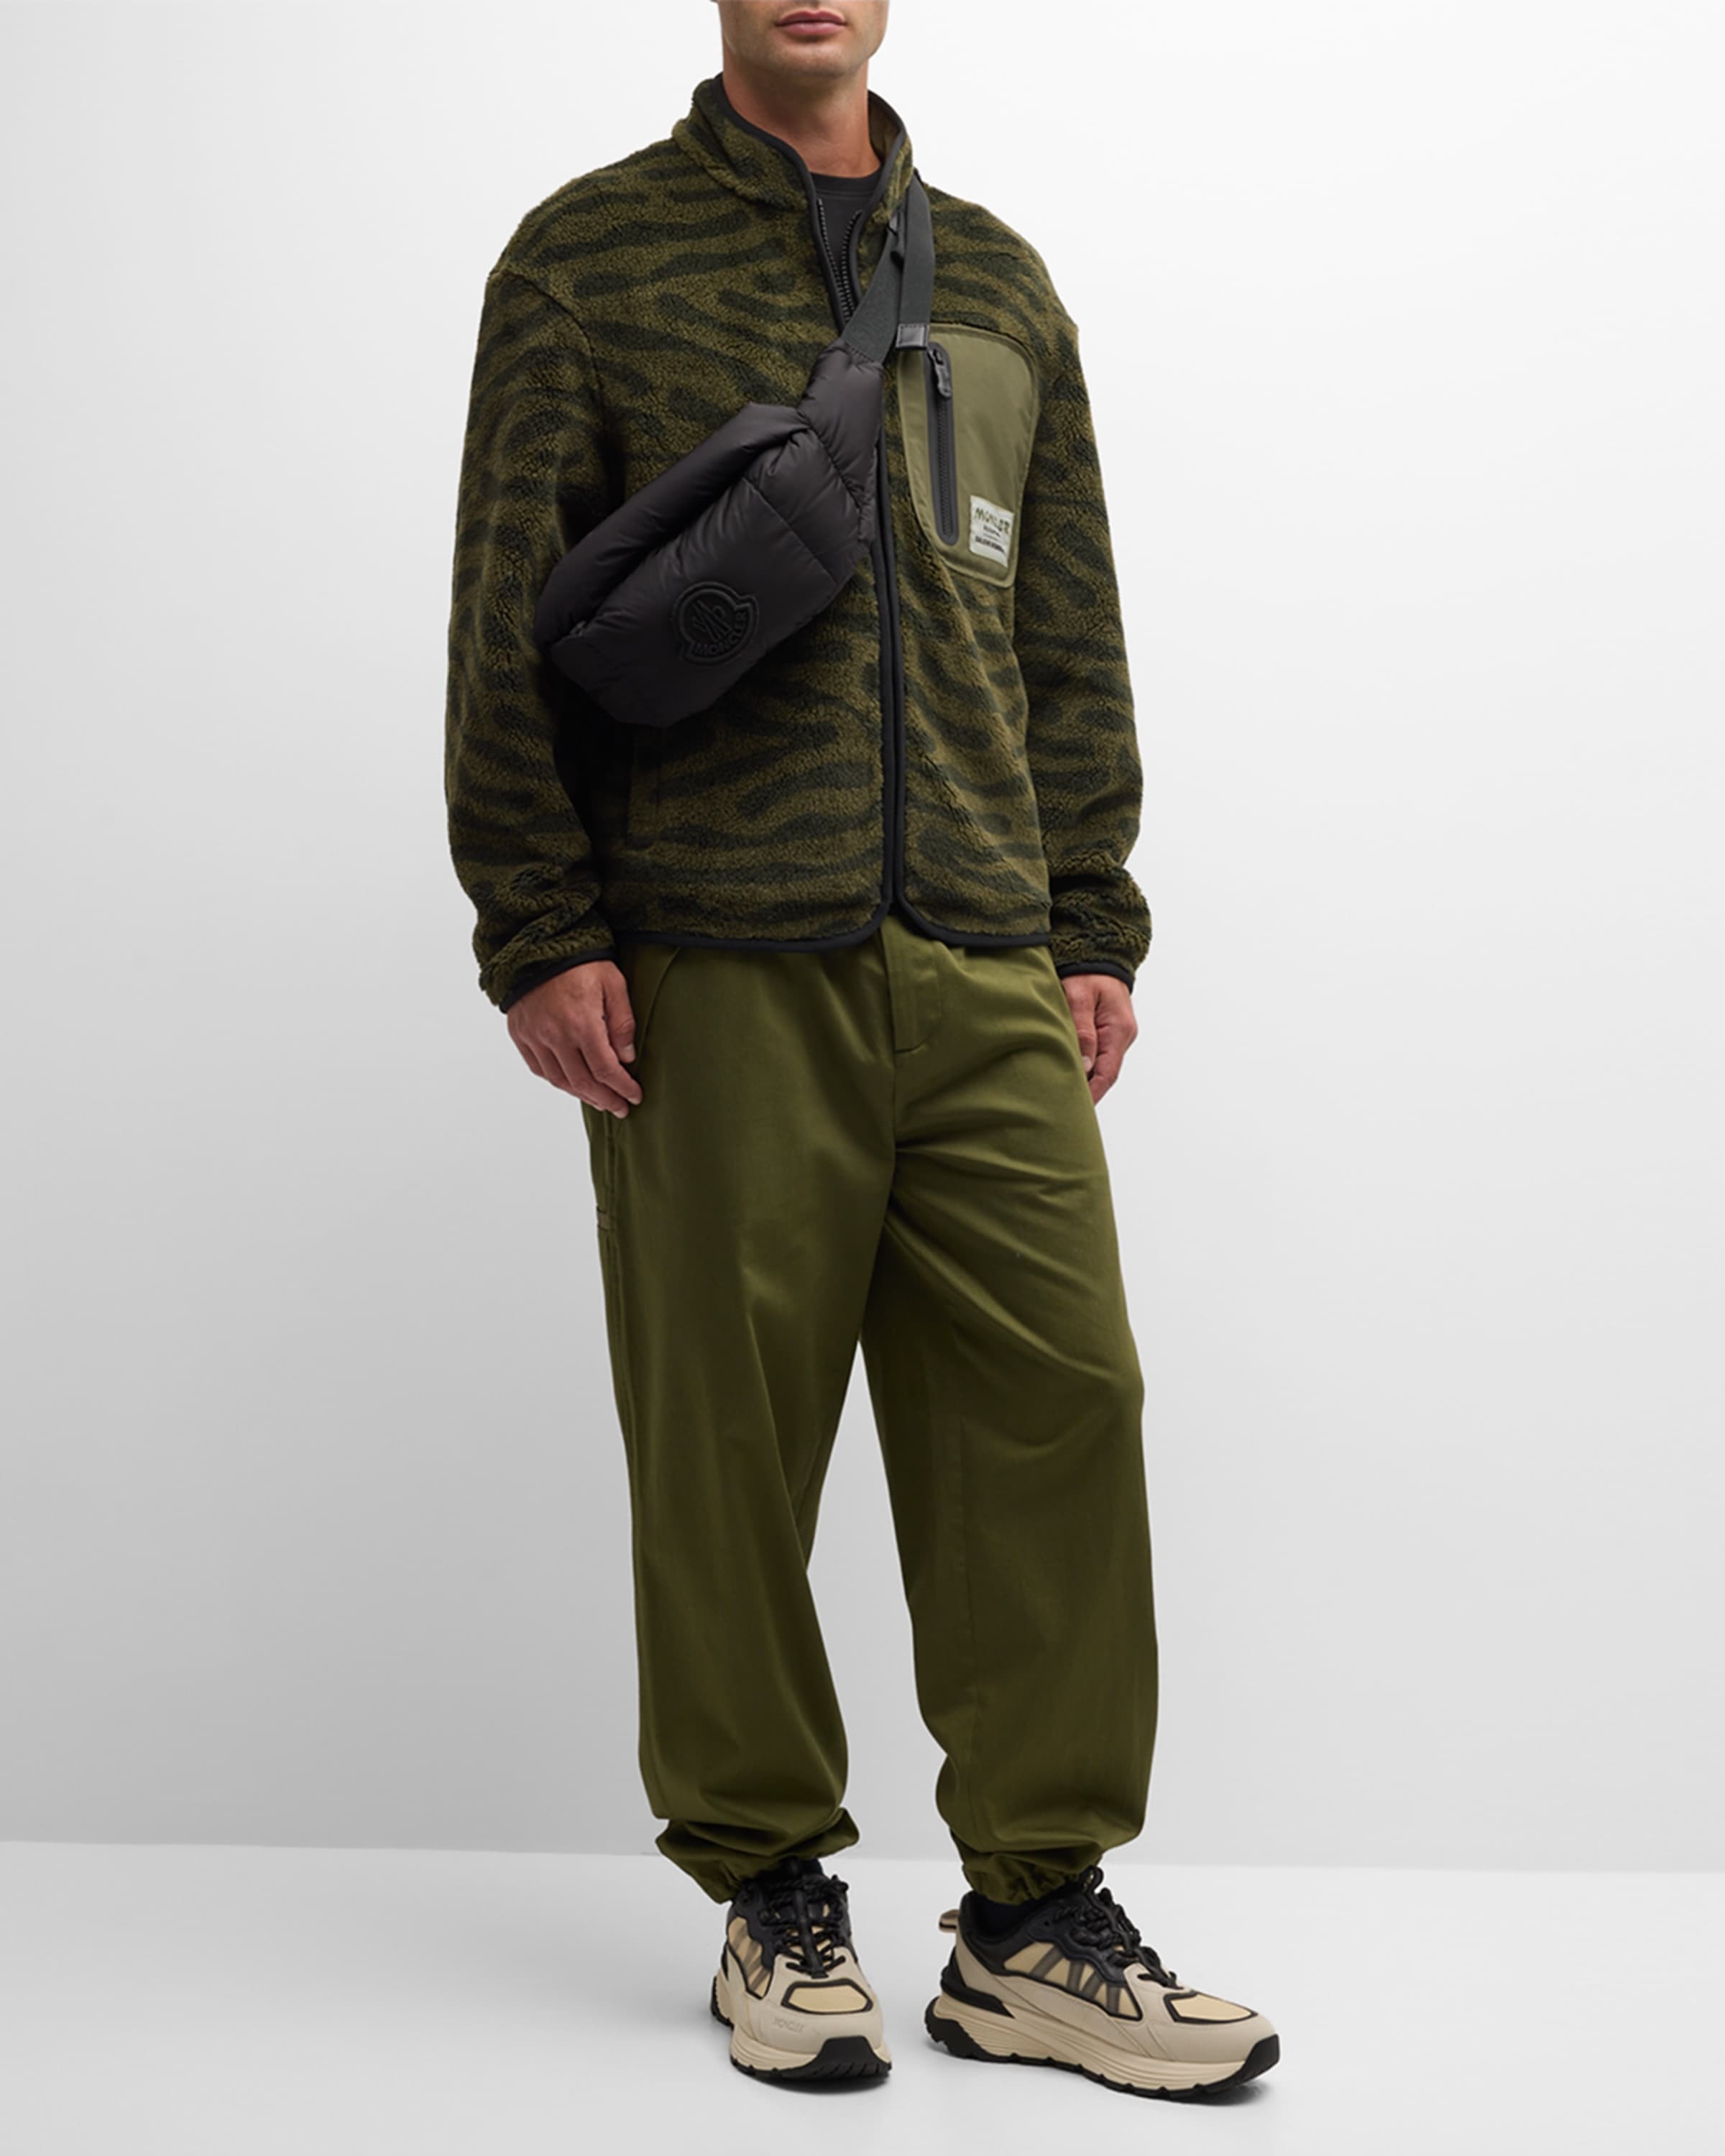 x Salehe Bembury Men's Abstract Fleece Zip Sweatshirt - 3